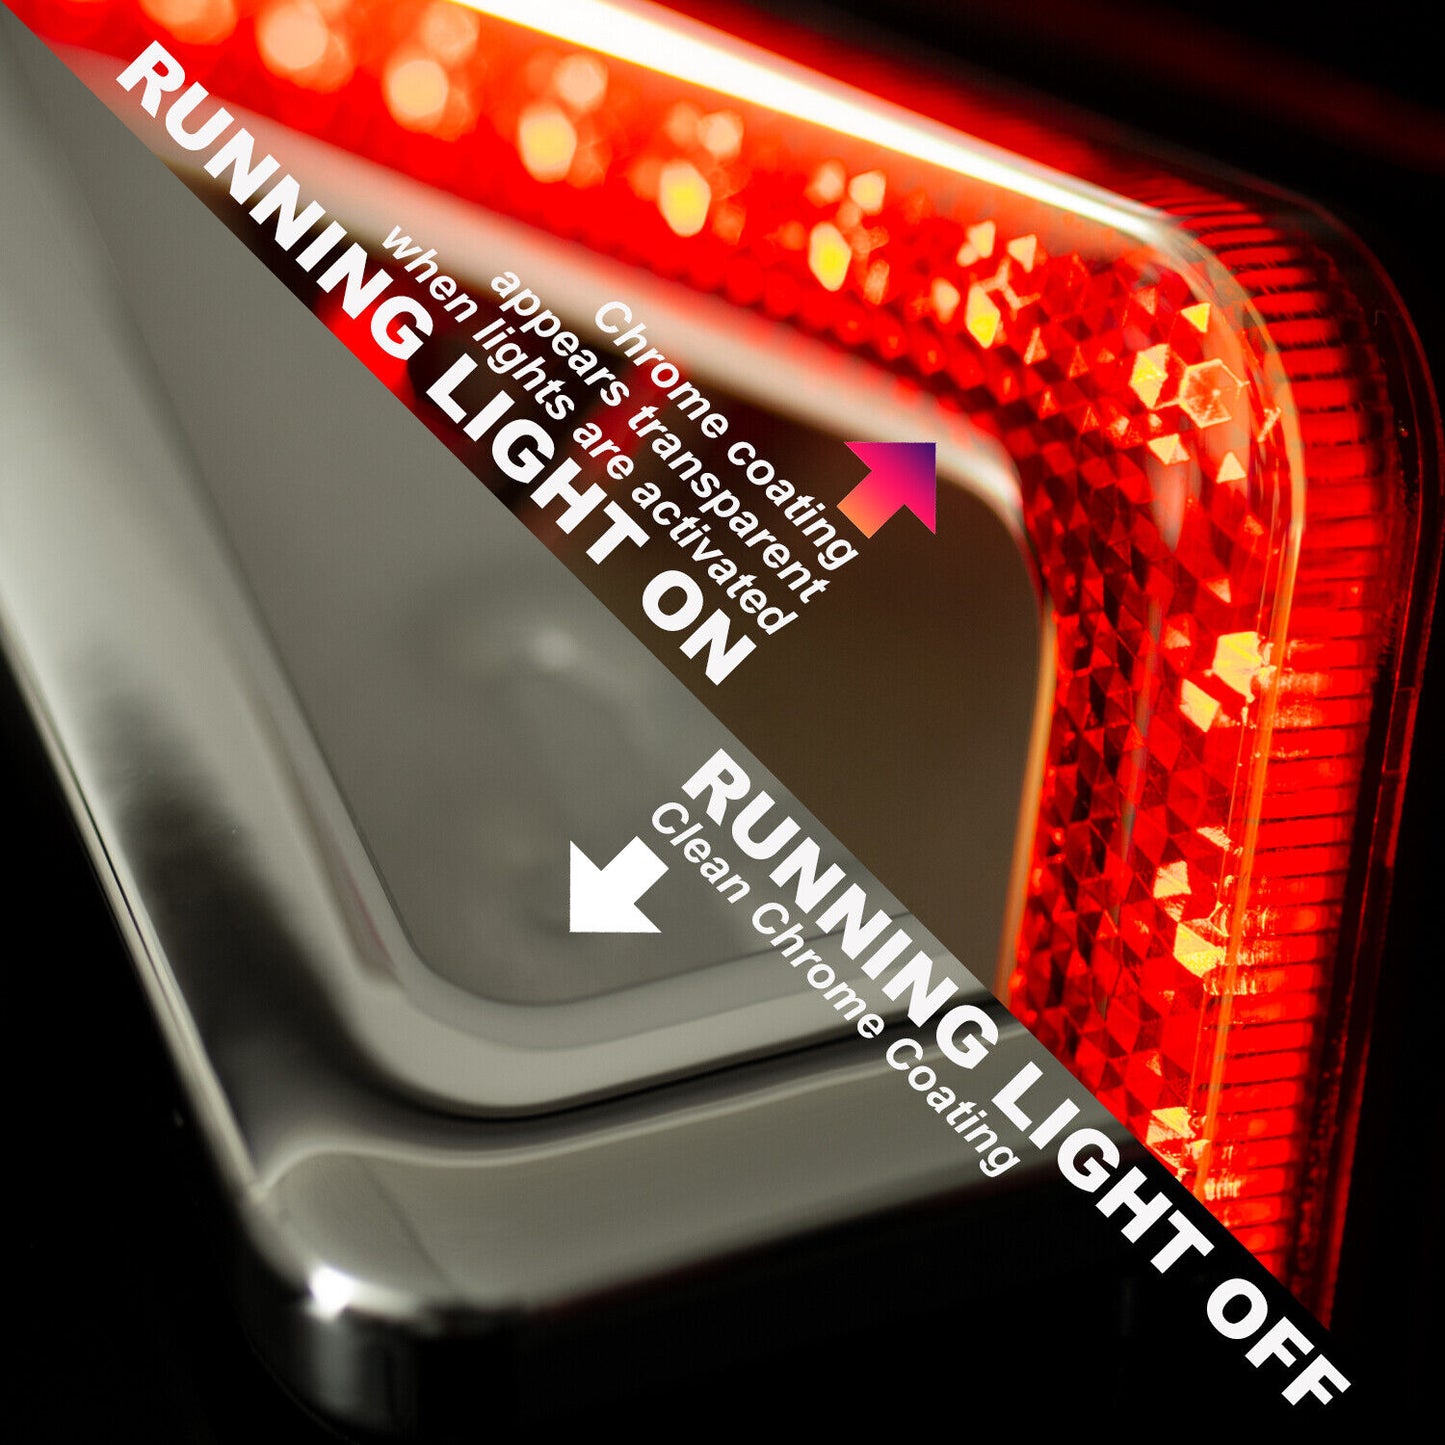 LED Lighted License Plate Frame Cover Holder Black and Chrome Universal on Cars